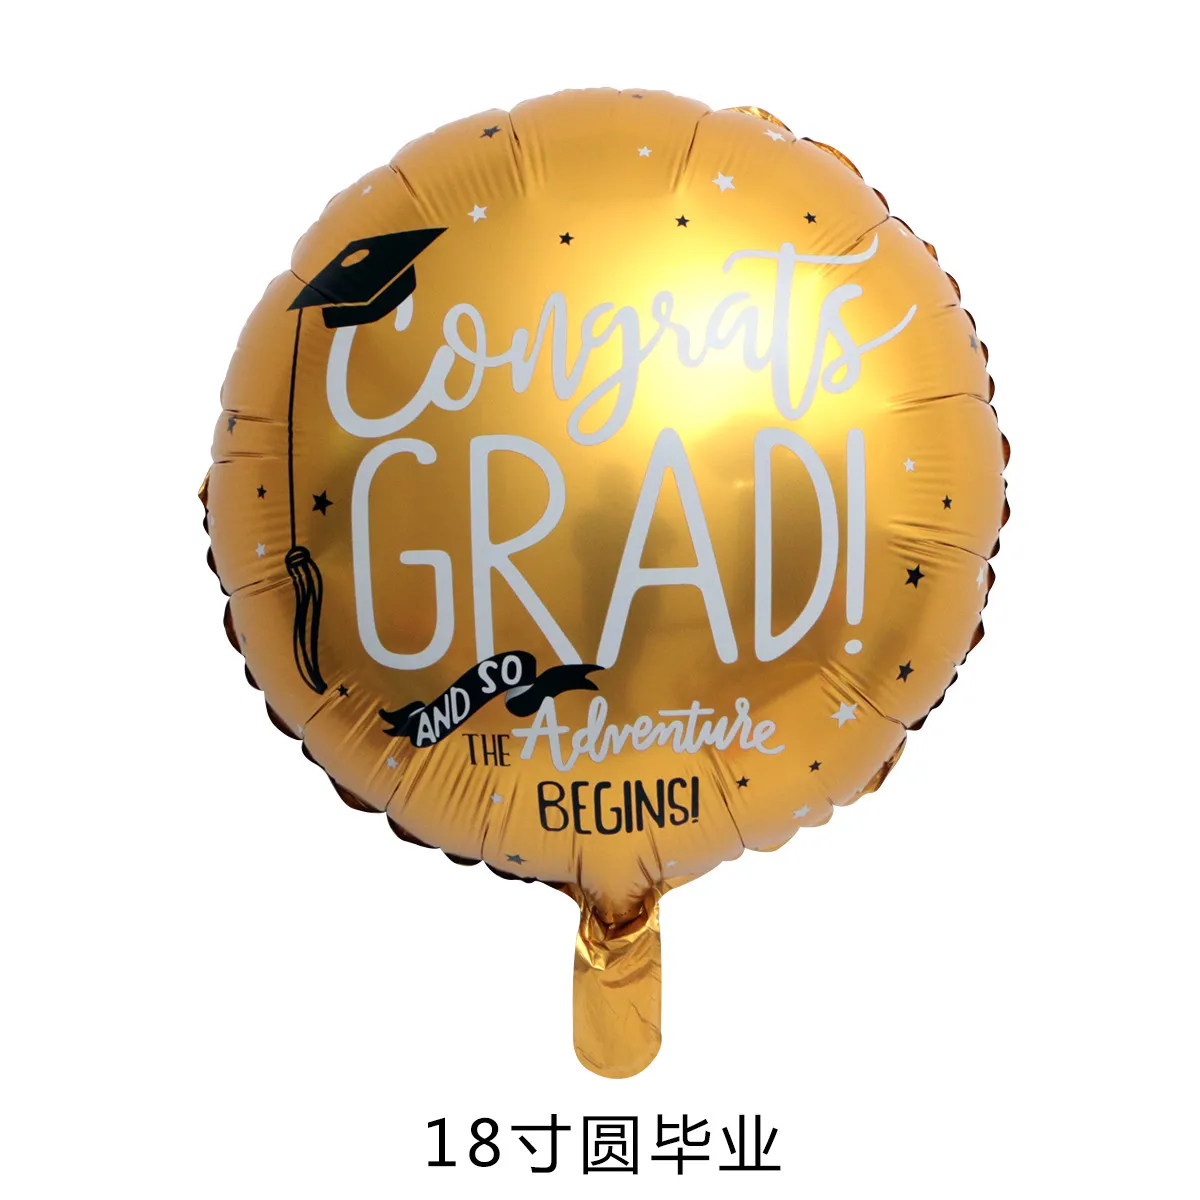 Gratulacje Grad Balony Graduation 2020 Foil Balloons Globos Globos Powrót do szkoły Dekoracje urodzinowe 2360